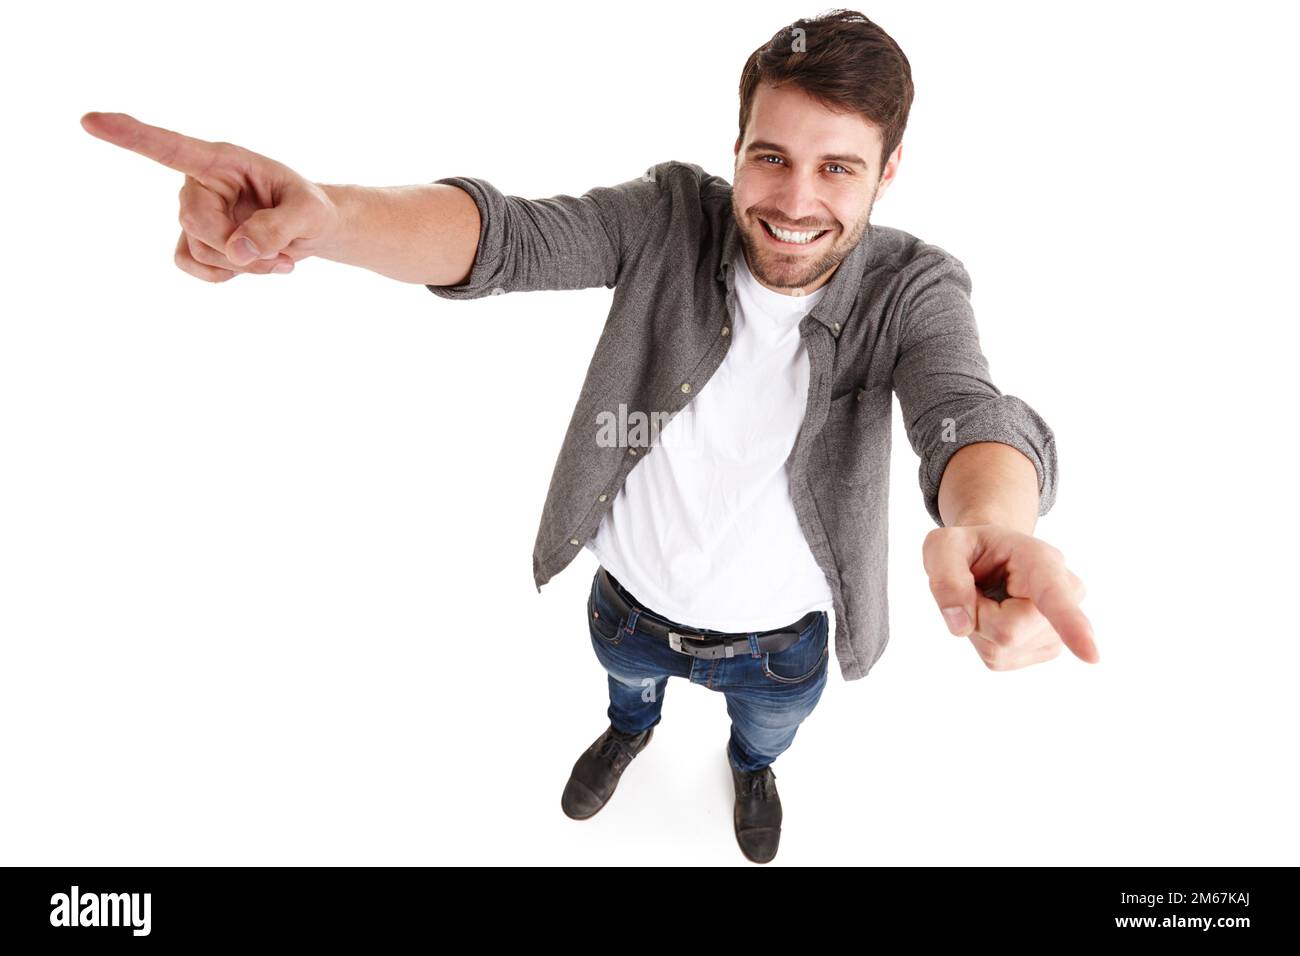 Partager la réussite. Photo en grand angle d'un jeune homme heureux dans un studio qui lève les bras et pointe. Banque D'Images